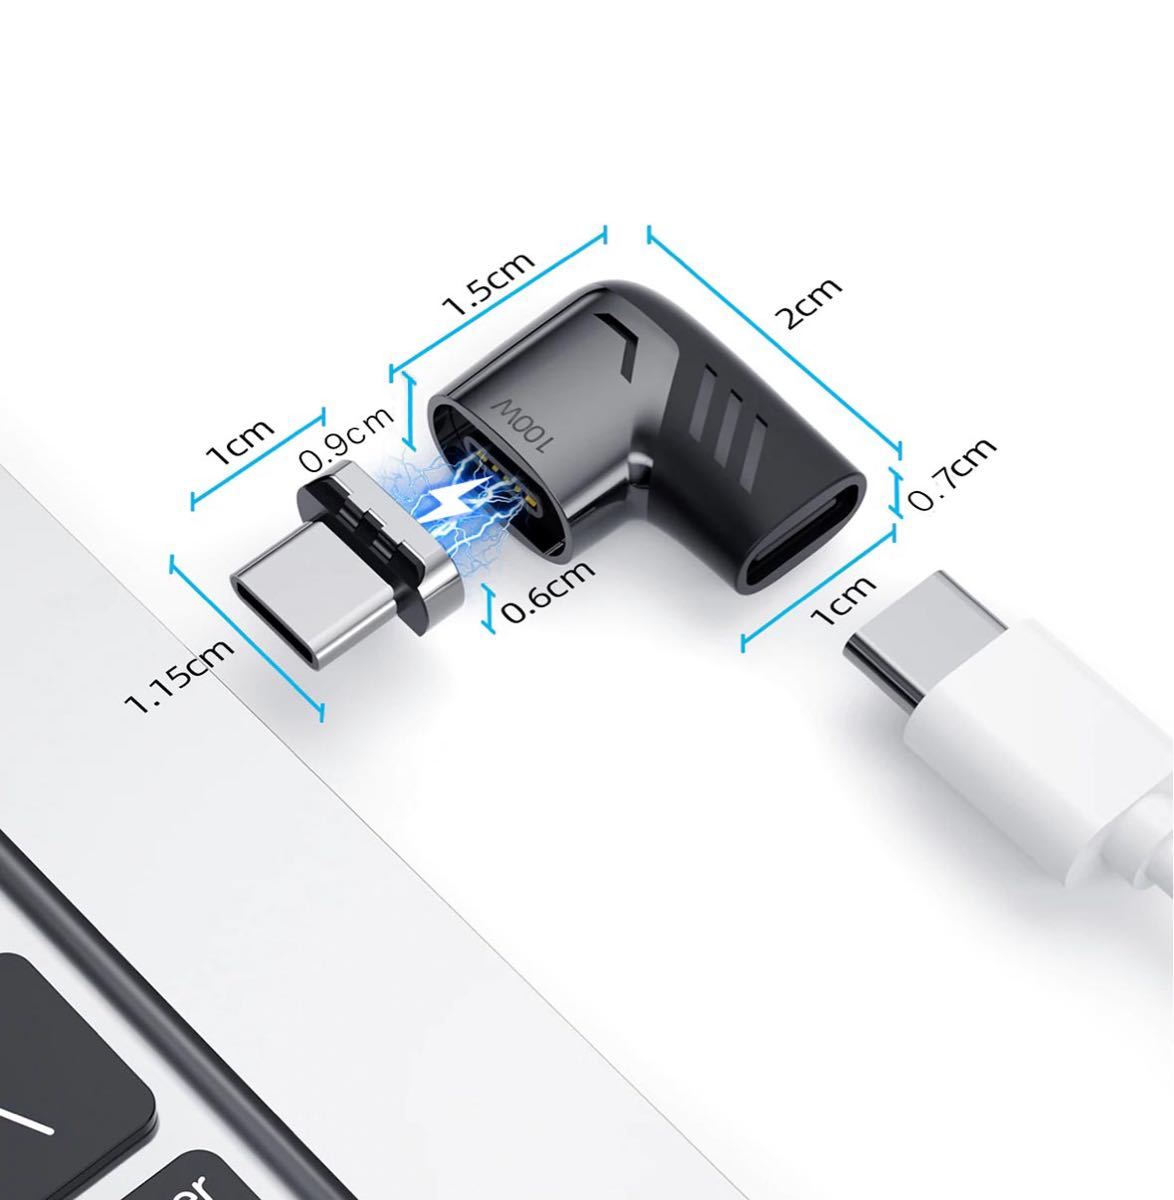 100W USB-C ( TYPE-C ) PD マグネットアダプター タイプC MacBook iPad Pro充電 データ転送